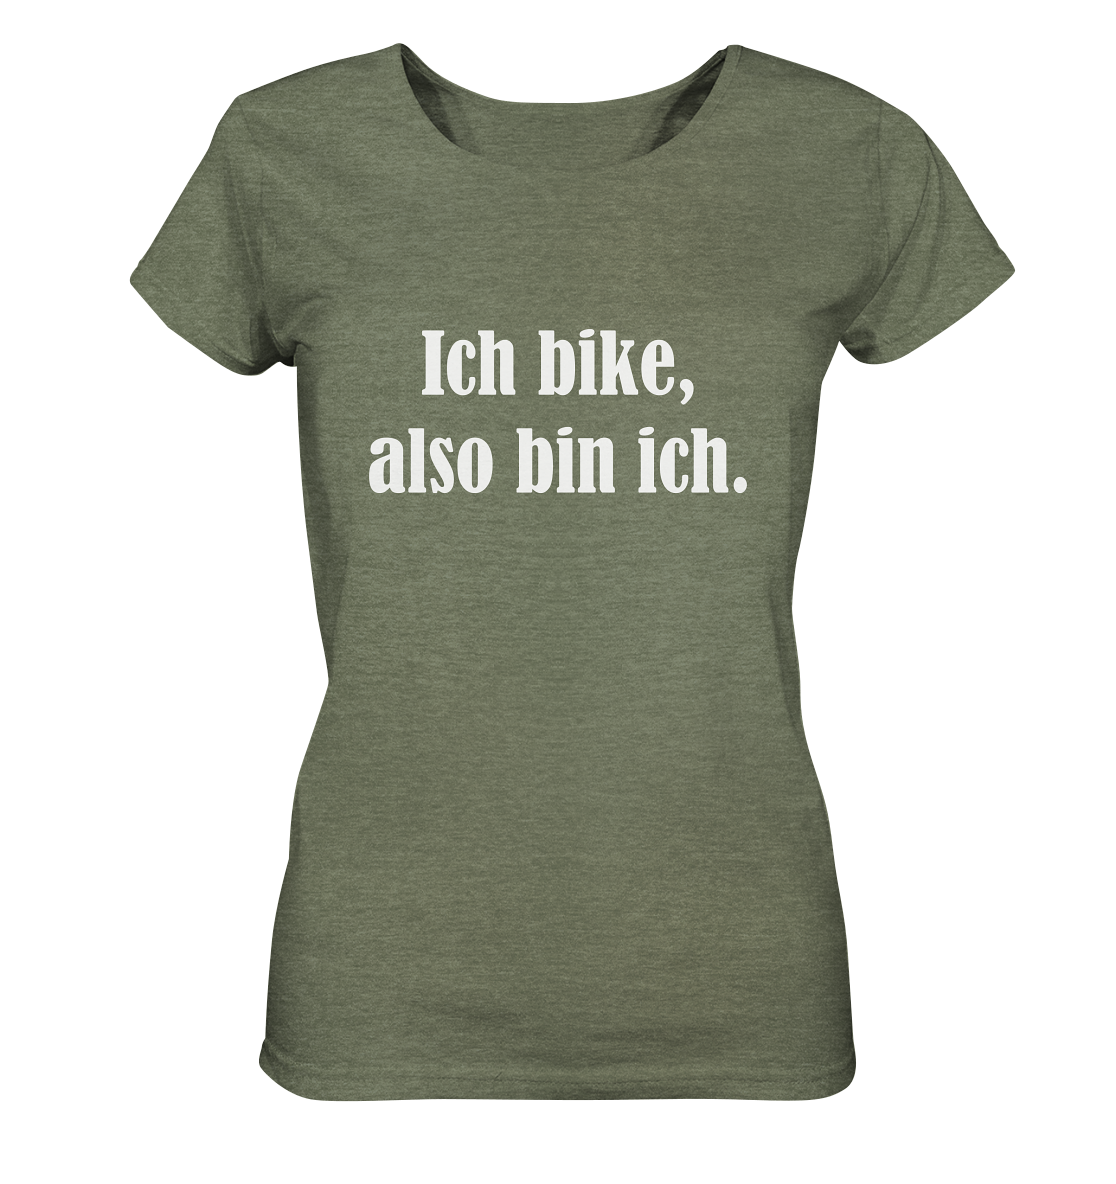 T-Shirt, Damen, Rundhals, mit weißem Aufdruck "Ich bike, also bin ich", khaki meliert